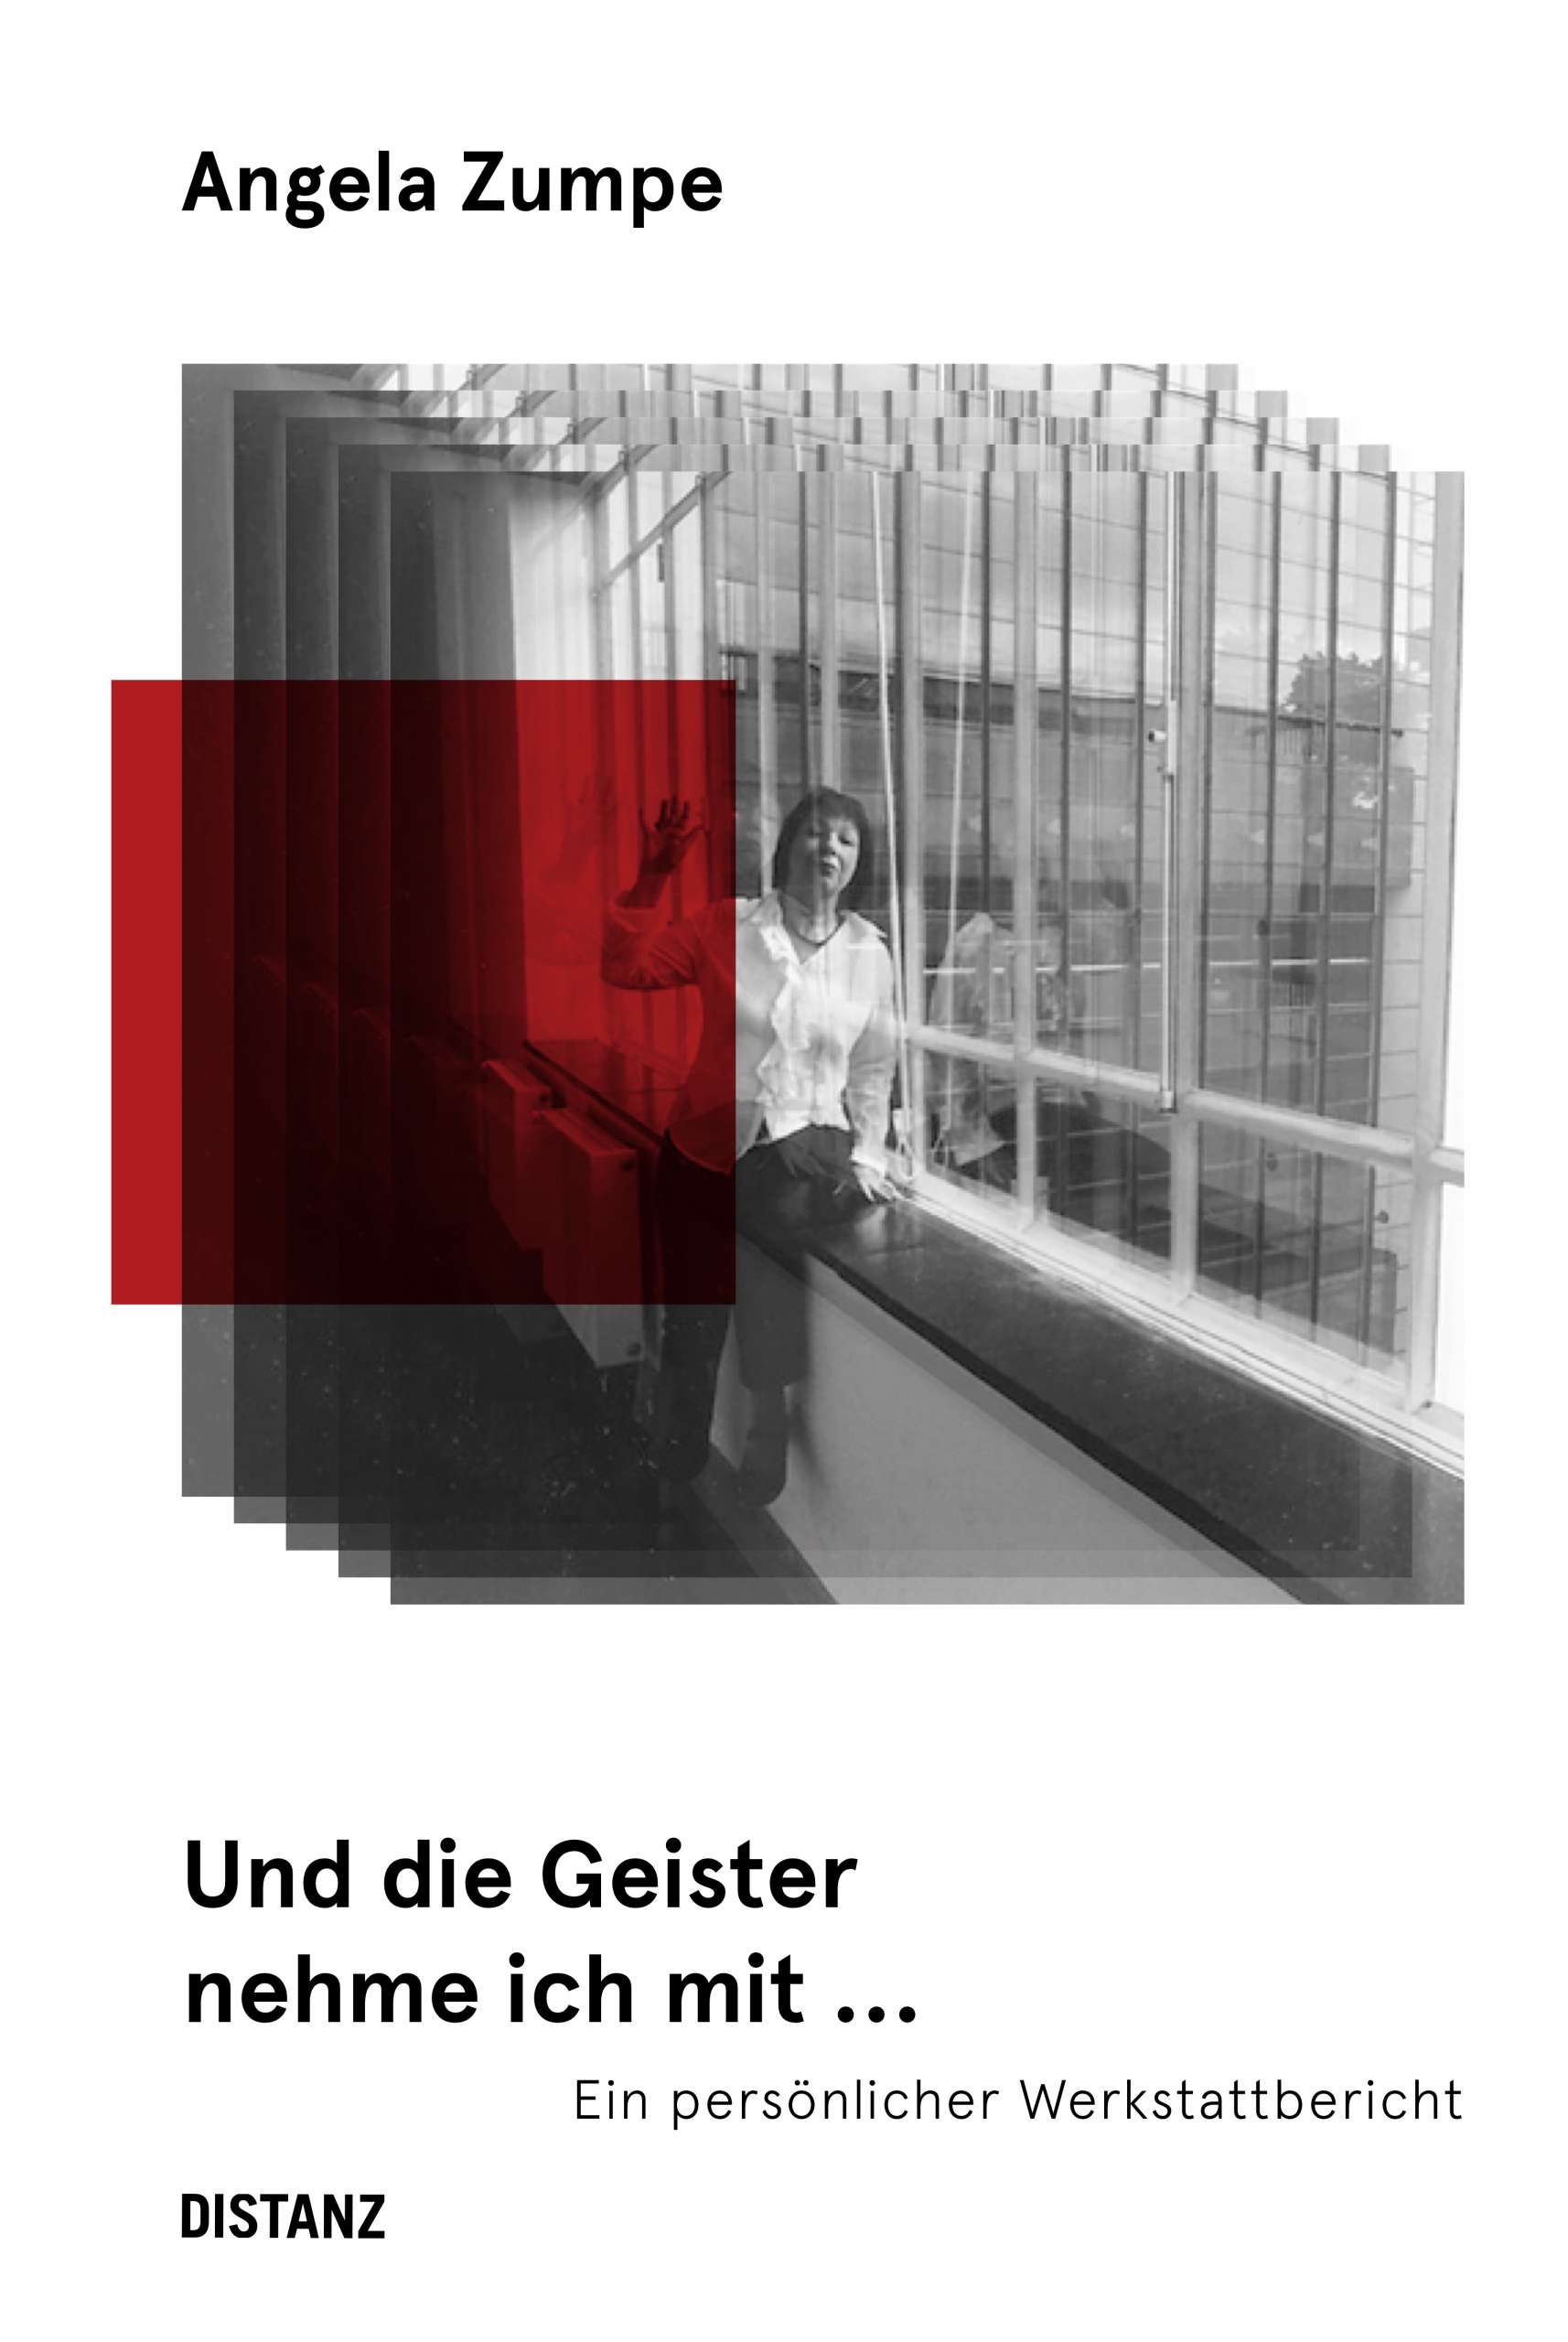 Angela Zumpe: Und die Geister nehme ich mit ..., Bild: Berlin: Distanz, 2019.